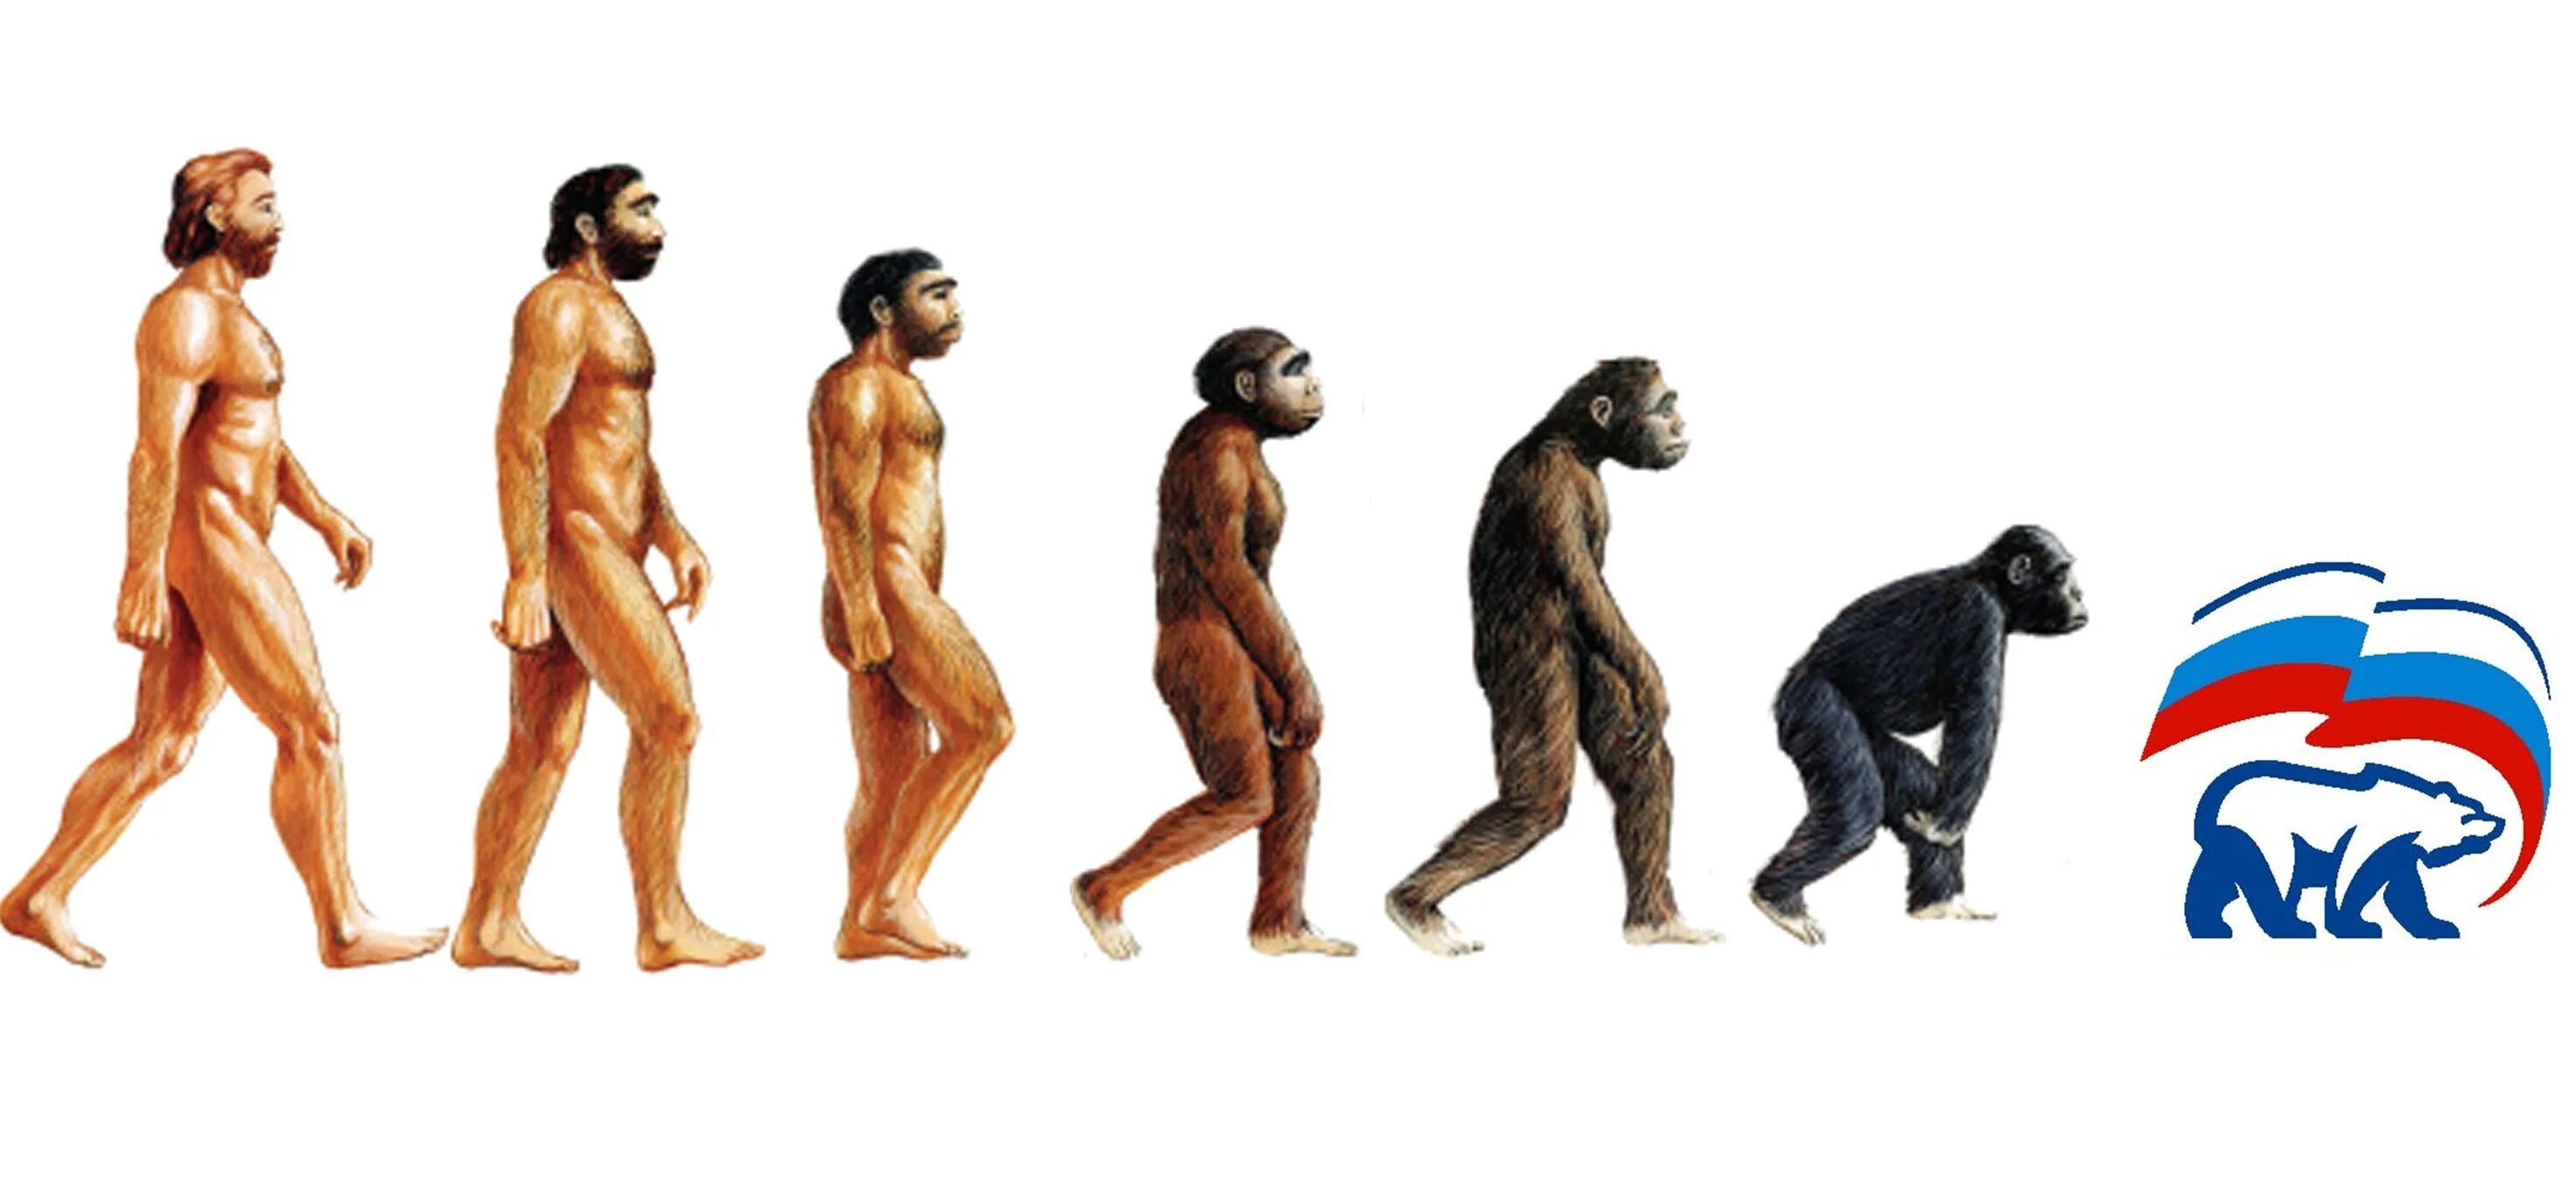 Процесс превращения человека в обезьяну. Человек превращается в обезьяну. Эволюция человека. Эволюция и деградация человека. От обезьяны к человеку.